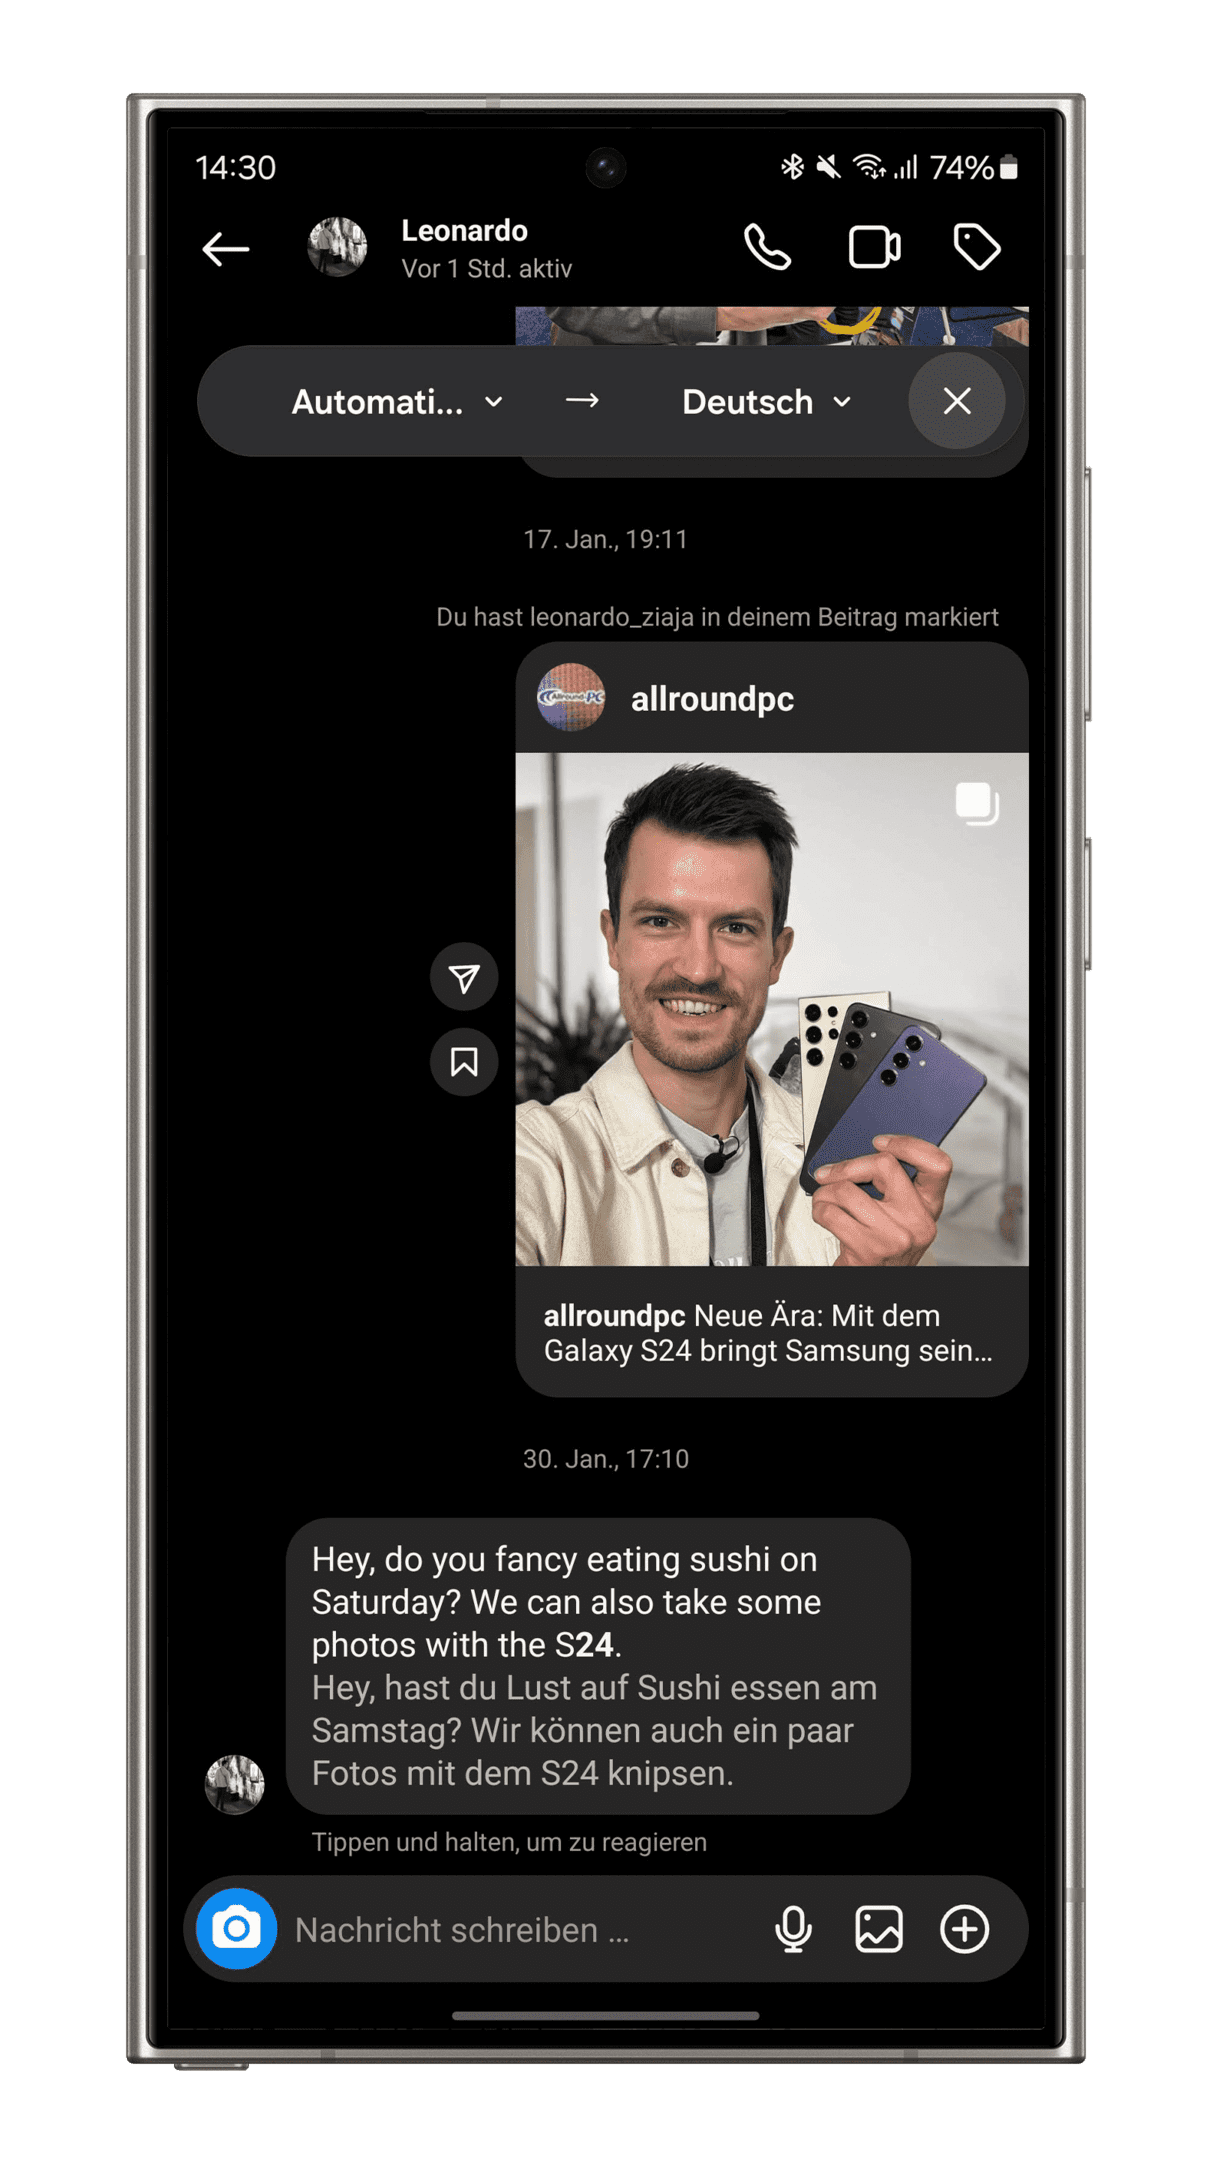 Samsung Galaxy S24 Plus Ultra Smartphone Tipps AI-Funktionen Chat Uebersetzung Sprachstile